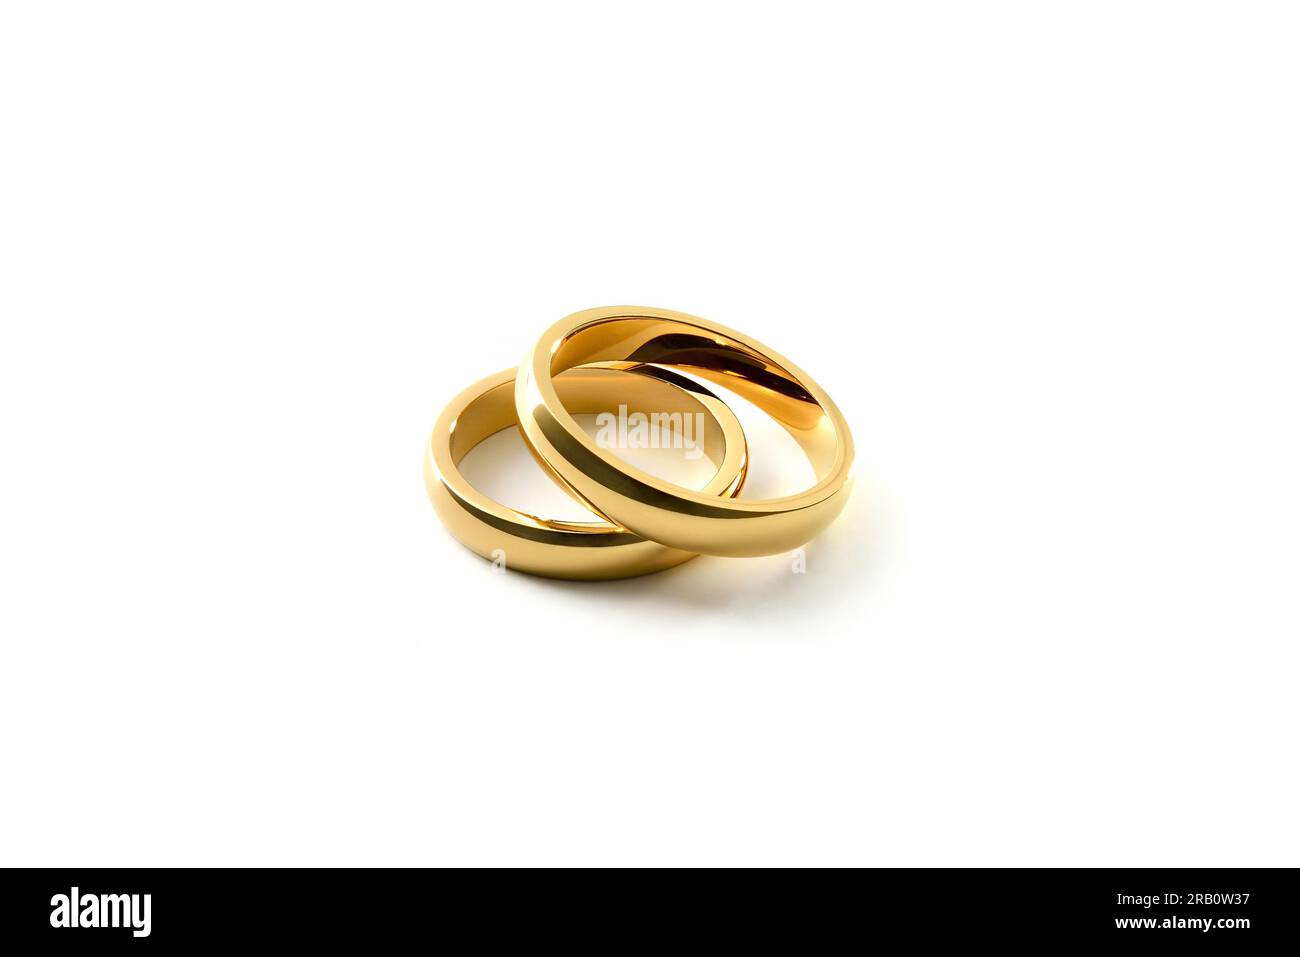 Dettaglio degli anelli di fidanzamento dorati sovrapposti su sfondo bianco isolato. Vista elevata. Foto Stock